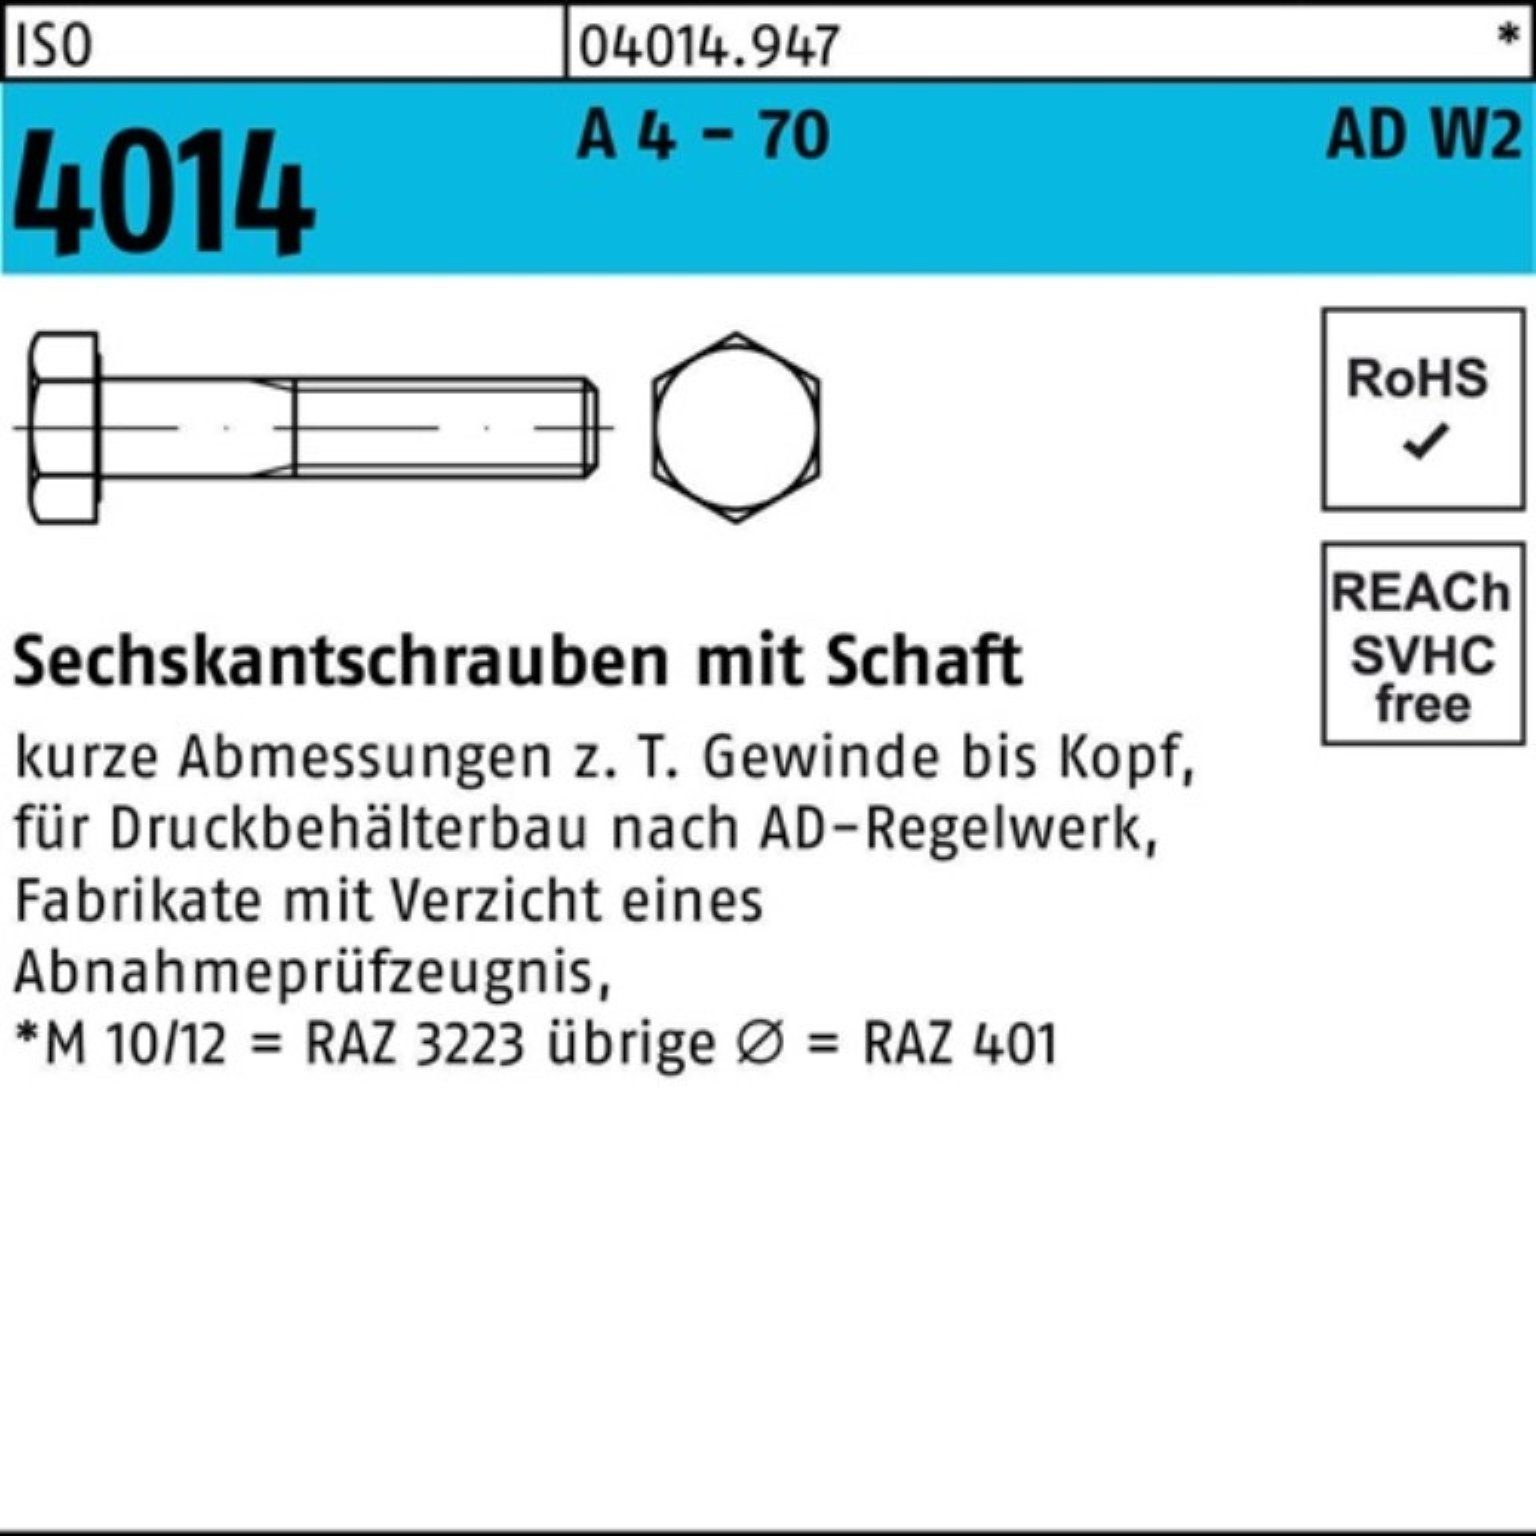 Schaft M20x 4014 Sechskantschraube 100er 120 AD-W2 2 70 - Sechskantschraube Bufab 4 A ISO Pack